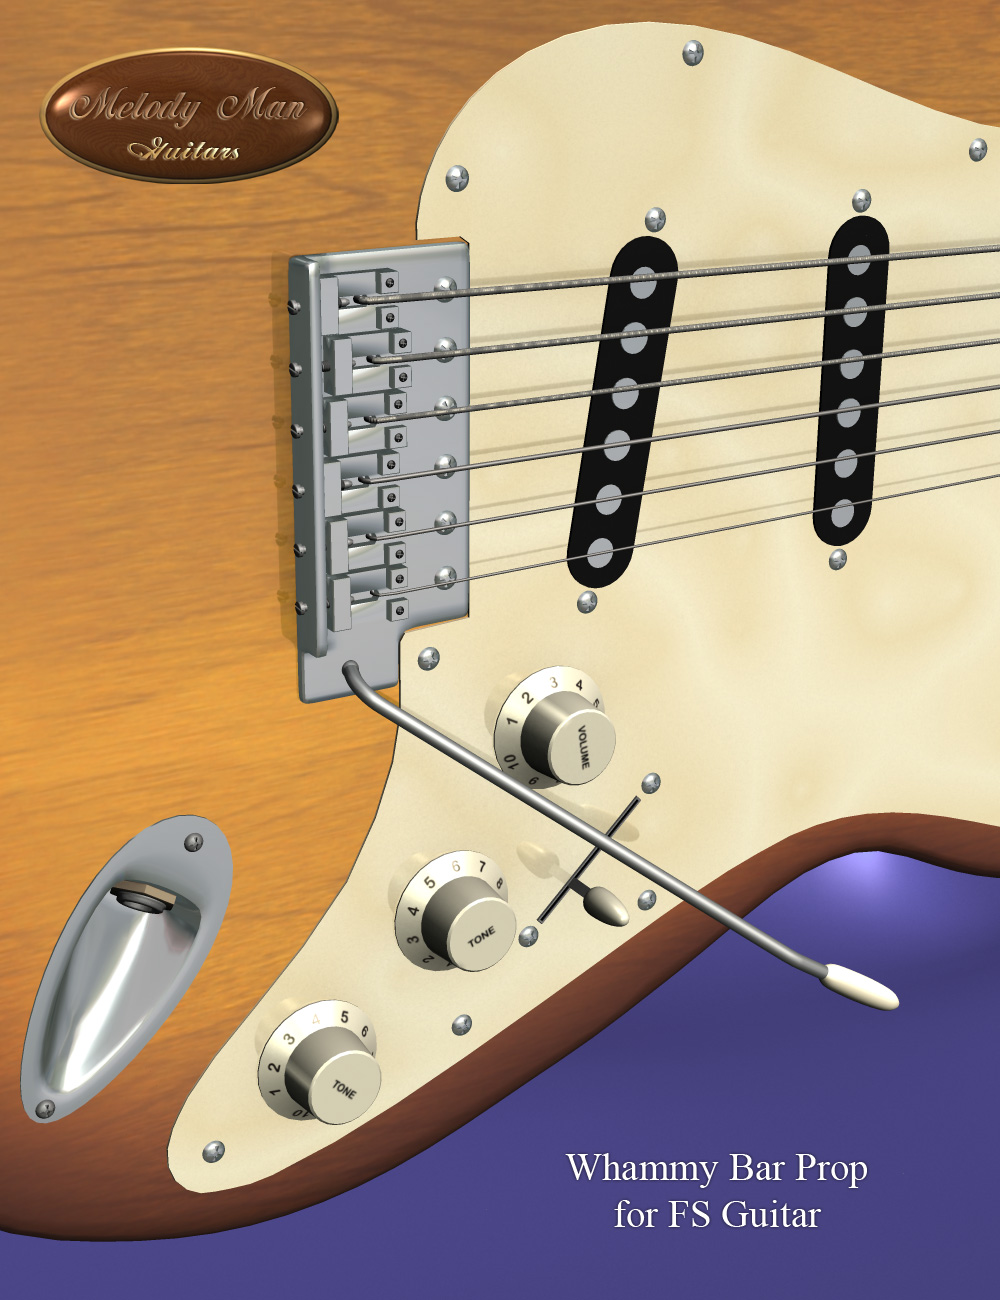 Melody Man Electric Guitars by: Don AlbertSimon3D, 3D Models by Daz 3D